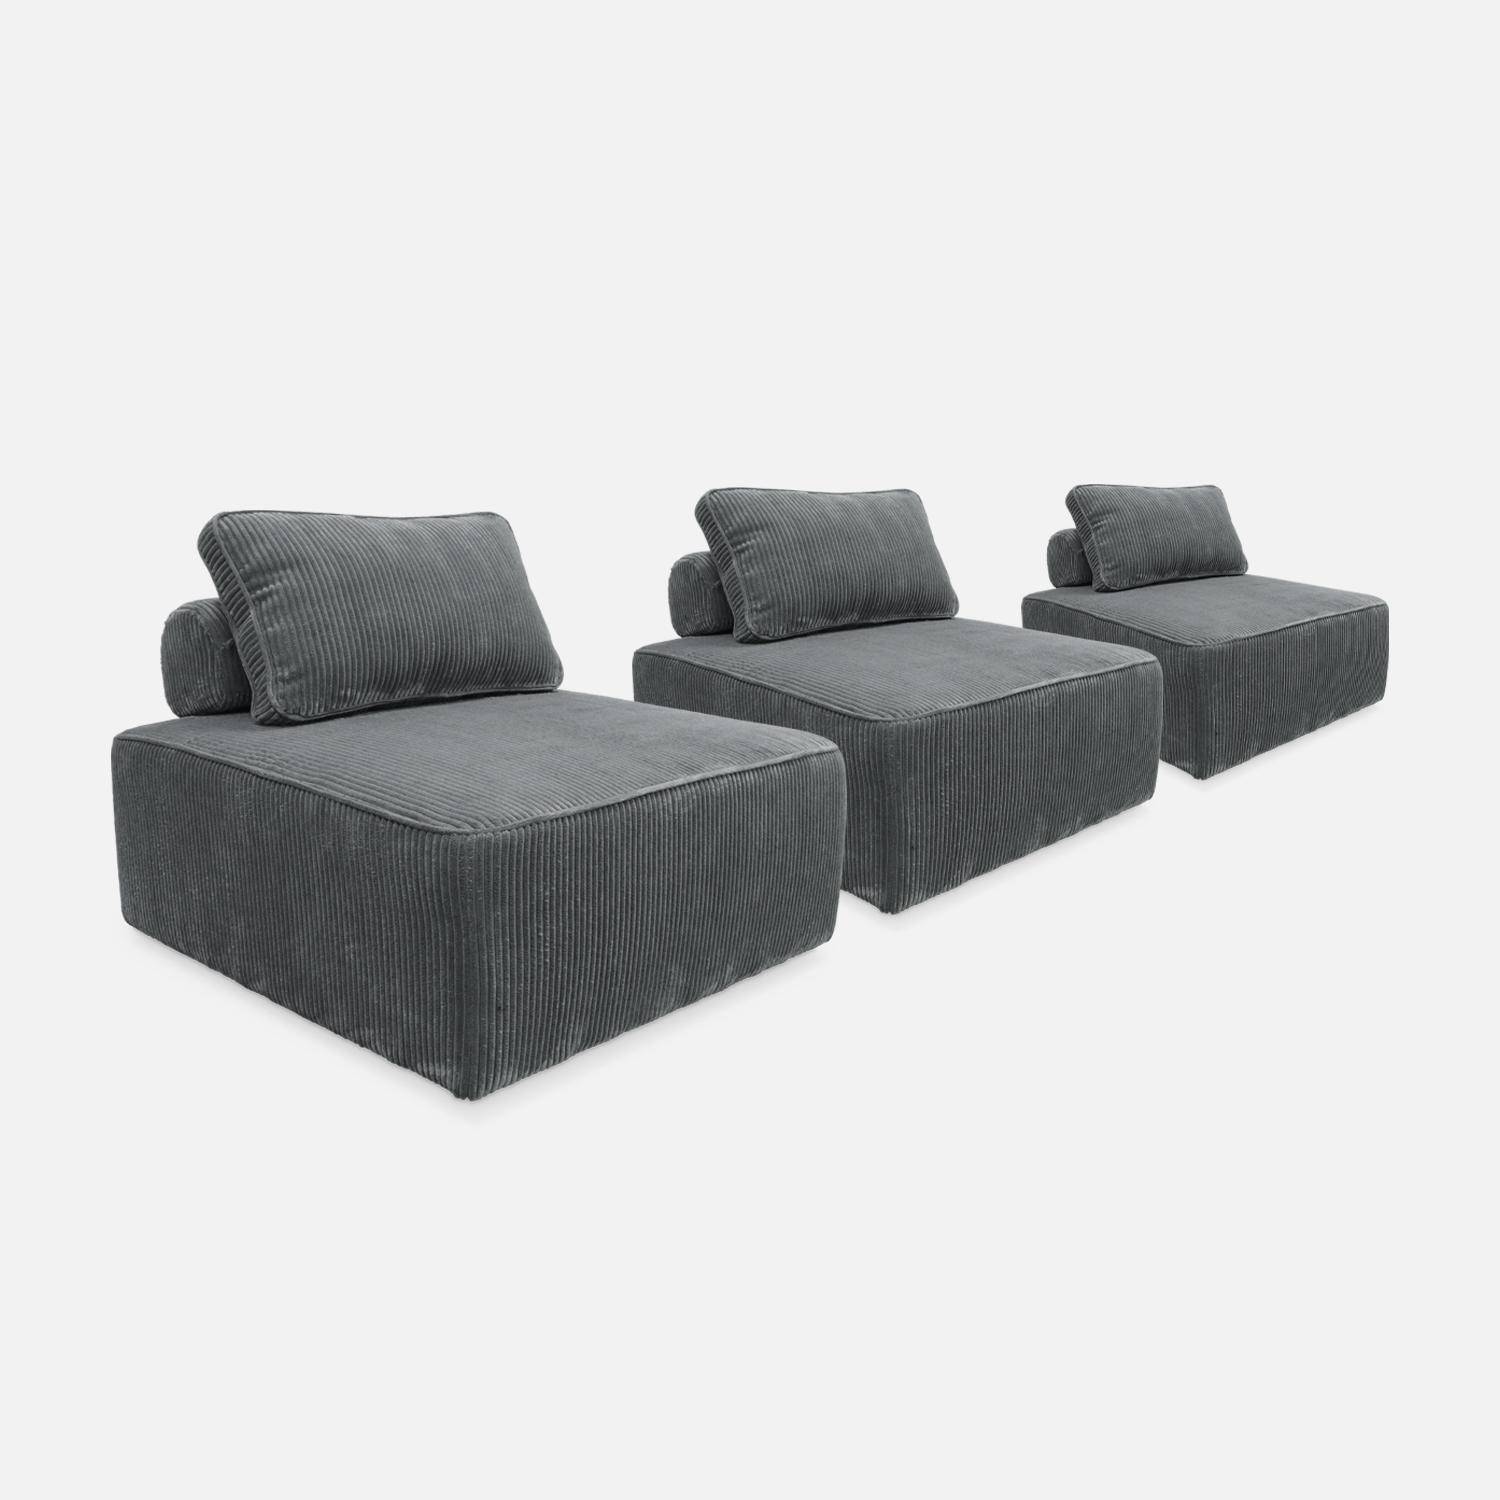 Set van 3 modulaire corduroy fauteuils in grijs met kussen Photo4